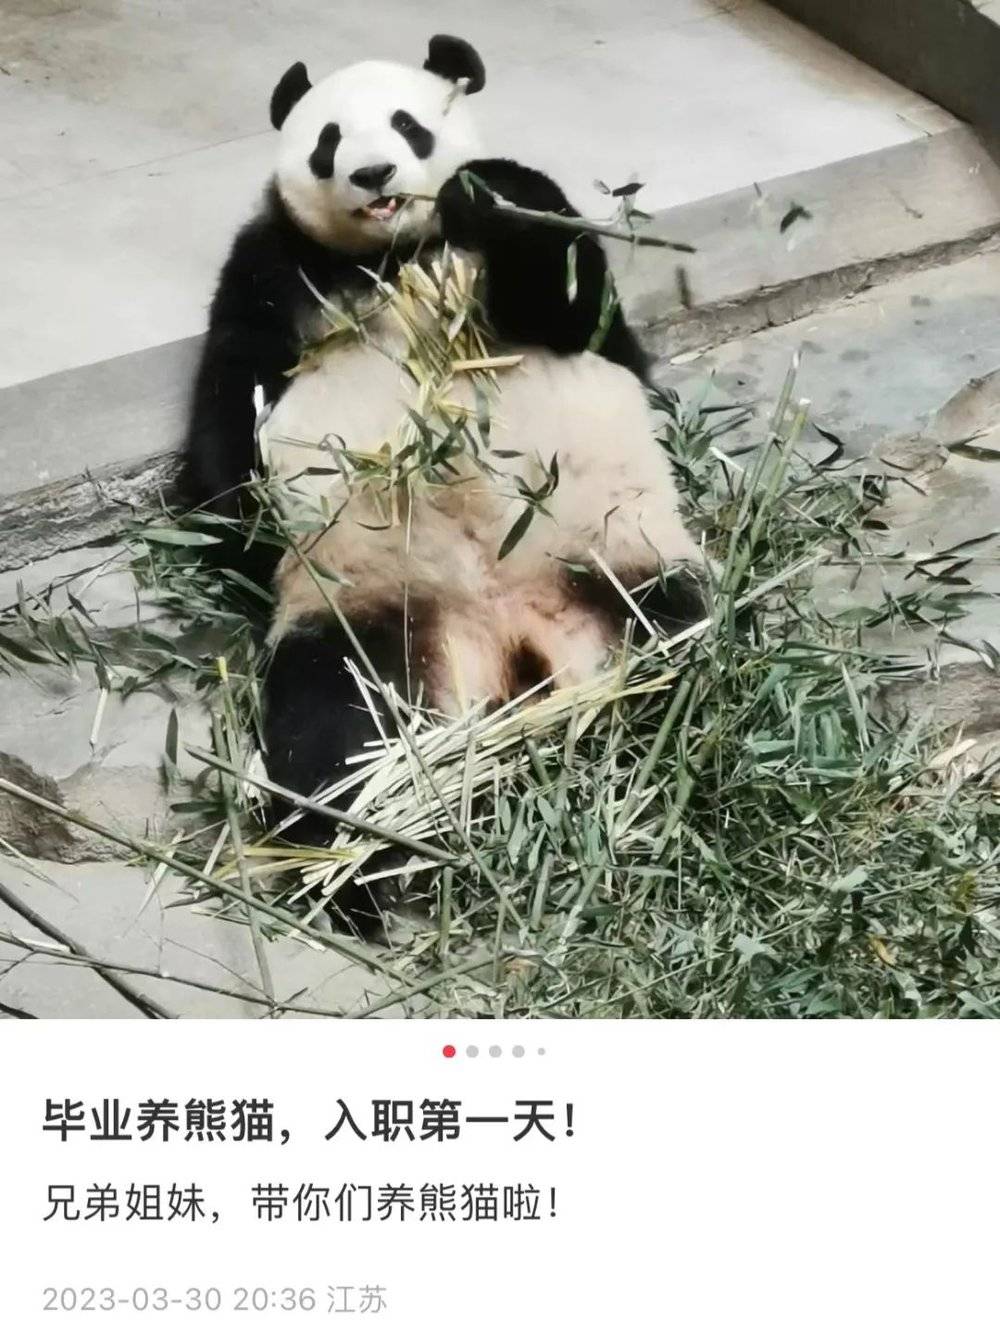 现在该熊猫馆已经招到了新饲养员，是畜牧兽医相关专业的本科应届生。/@小李毕业养熊猫